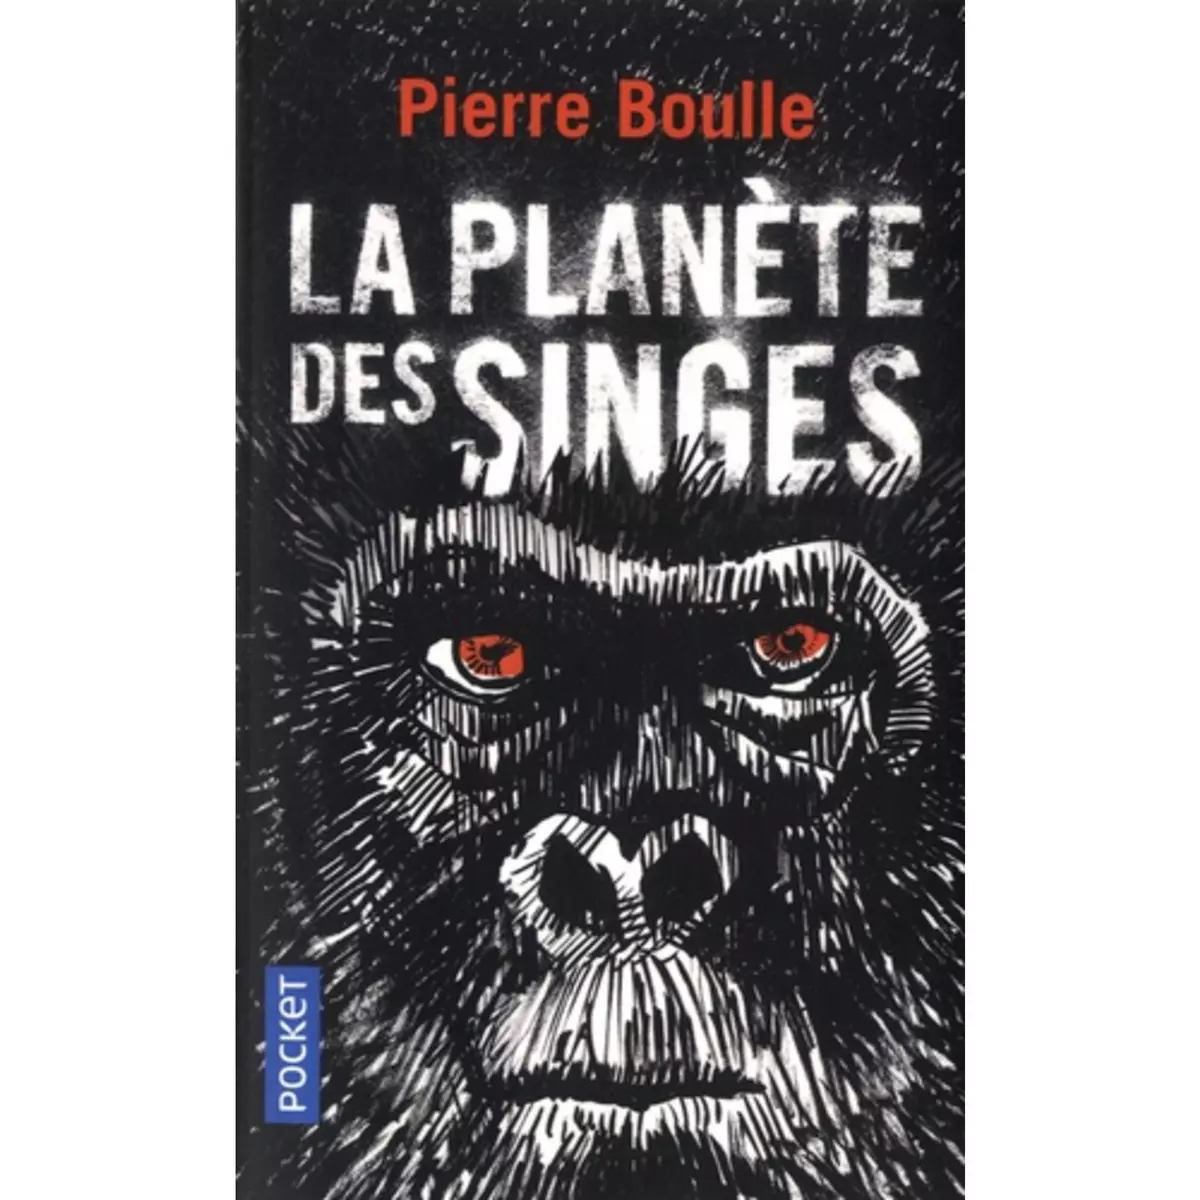  LA PLANETE DES SINGES, Boulle Pierre